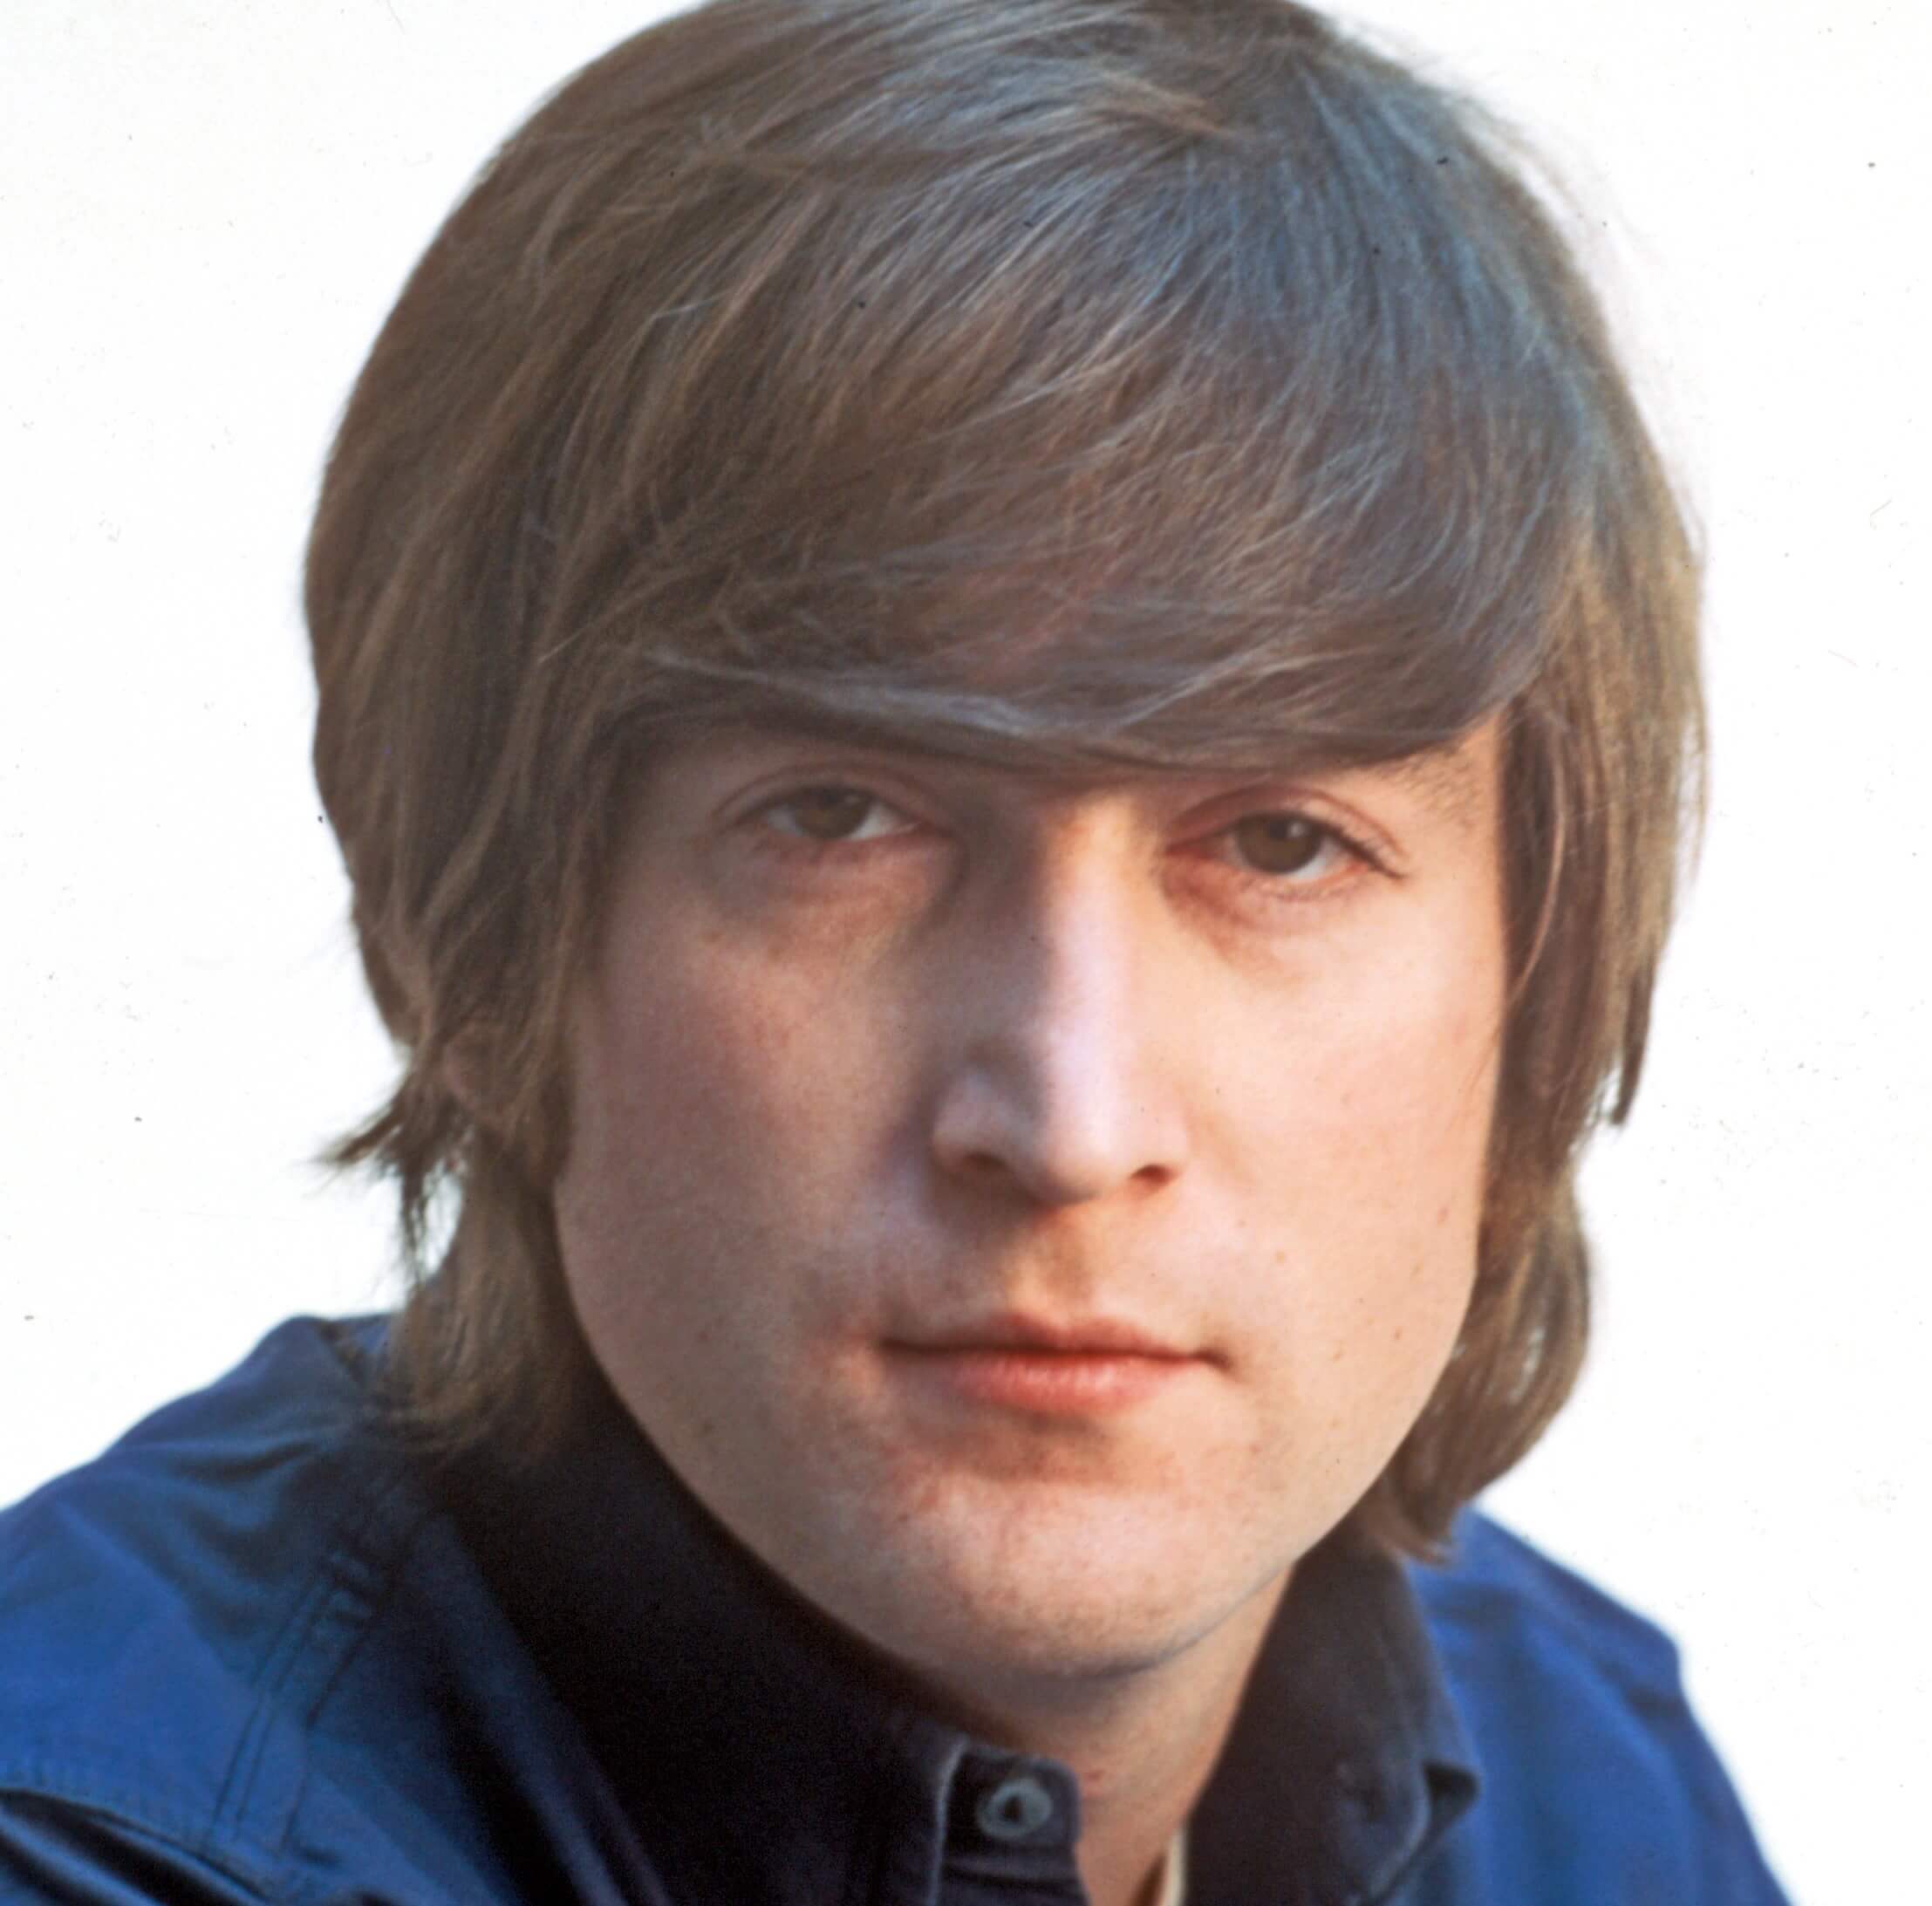 John Lennon wearing blue